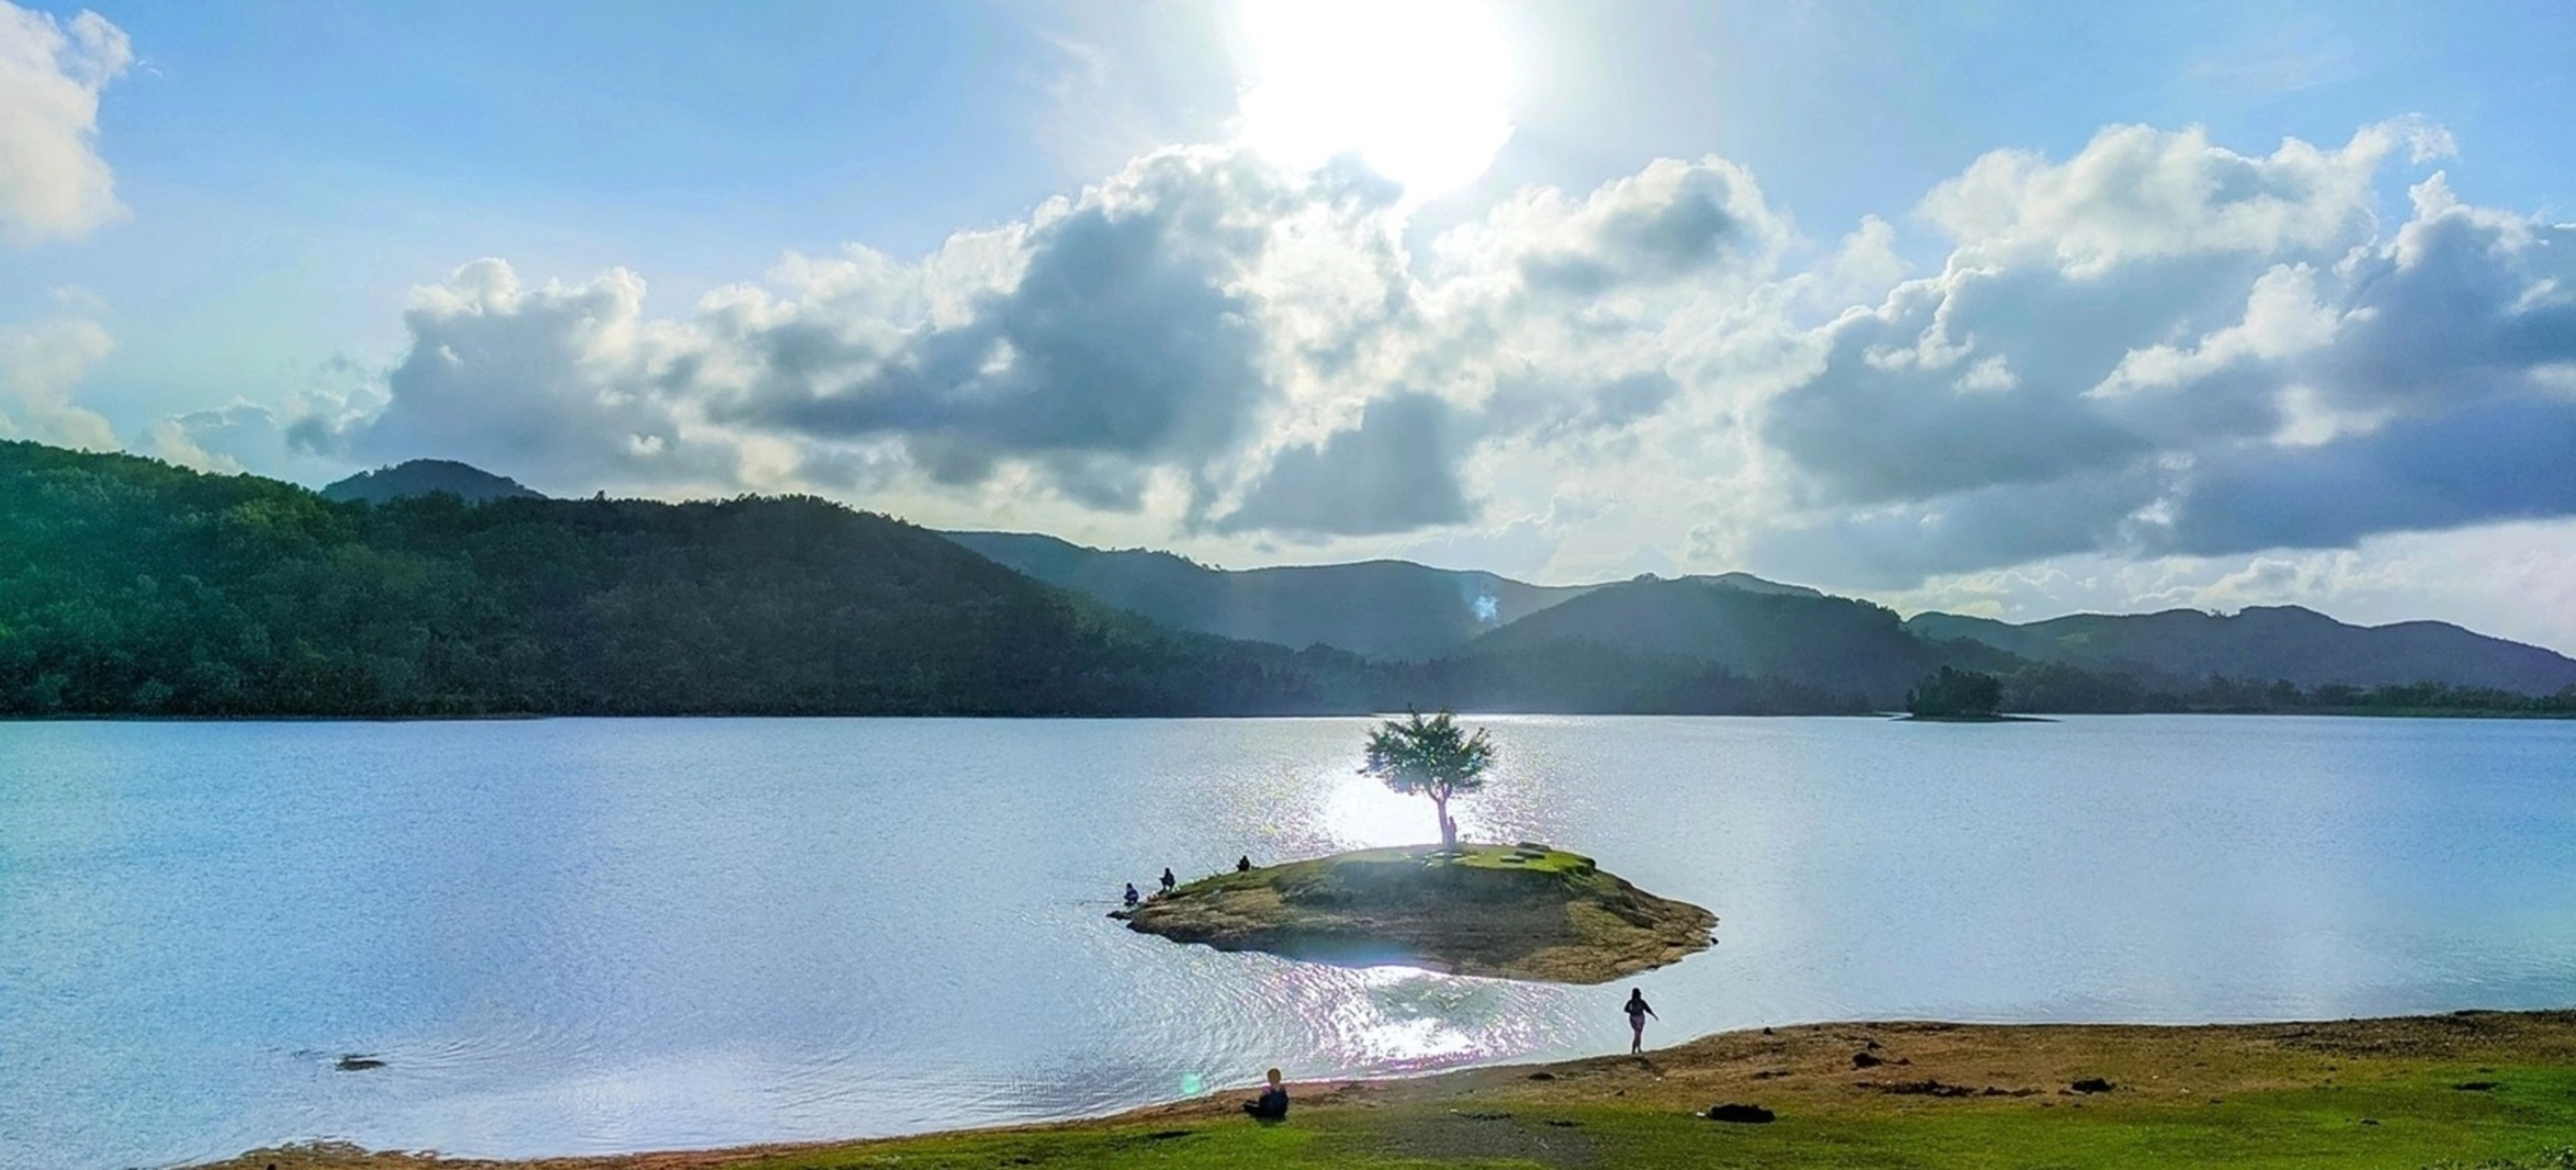 Hồ Phú Ninh - "hòn học xanh" đẹp như trong tranh ở Quảng Nam